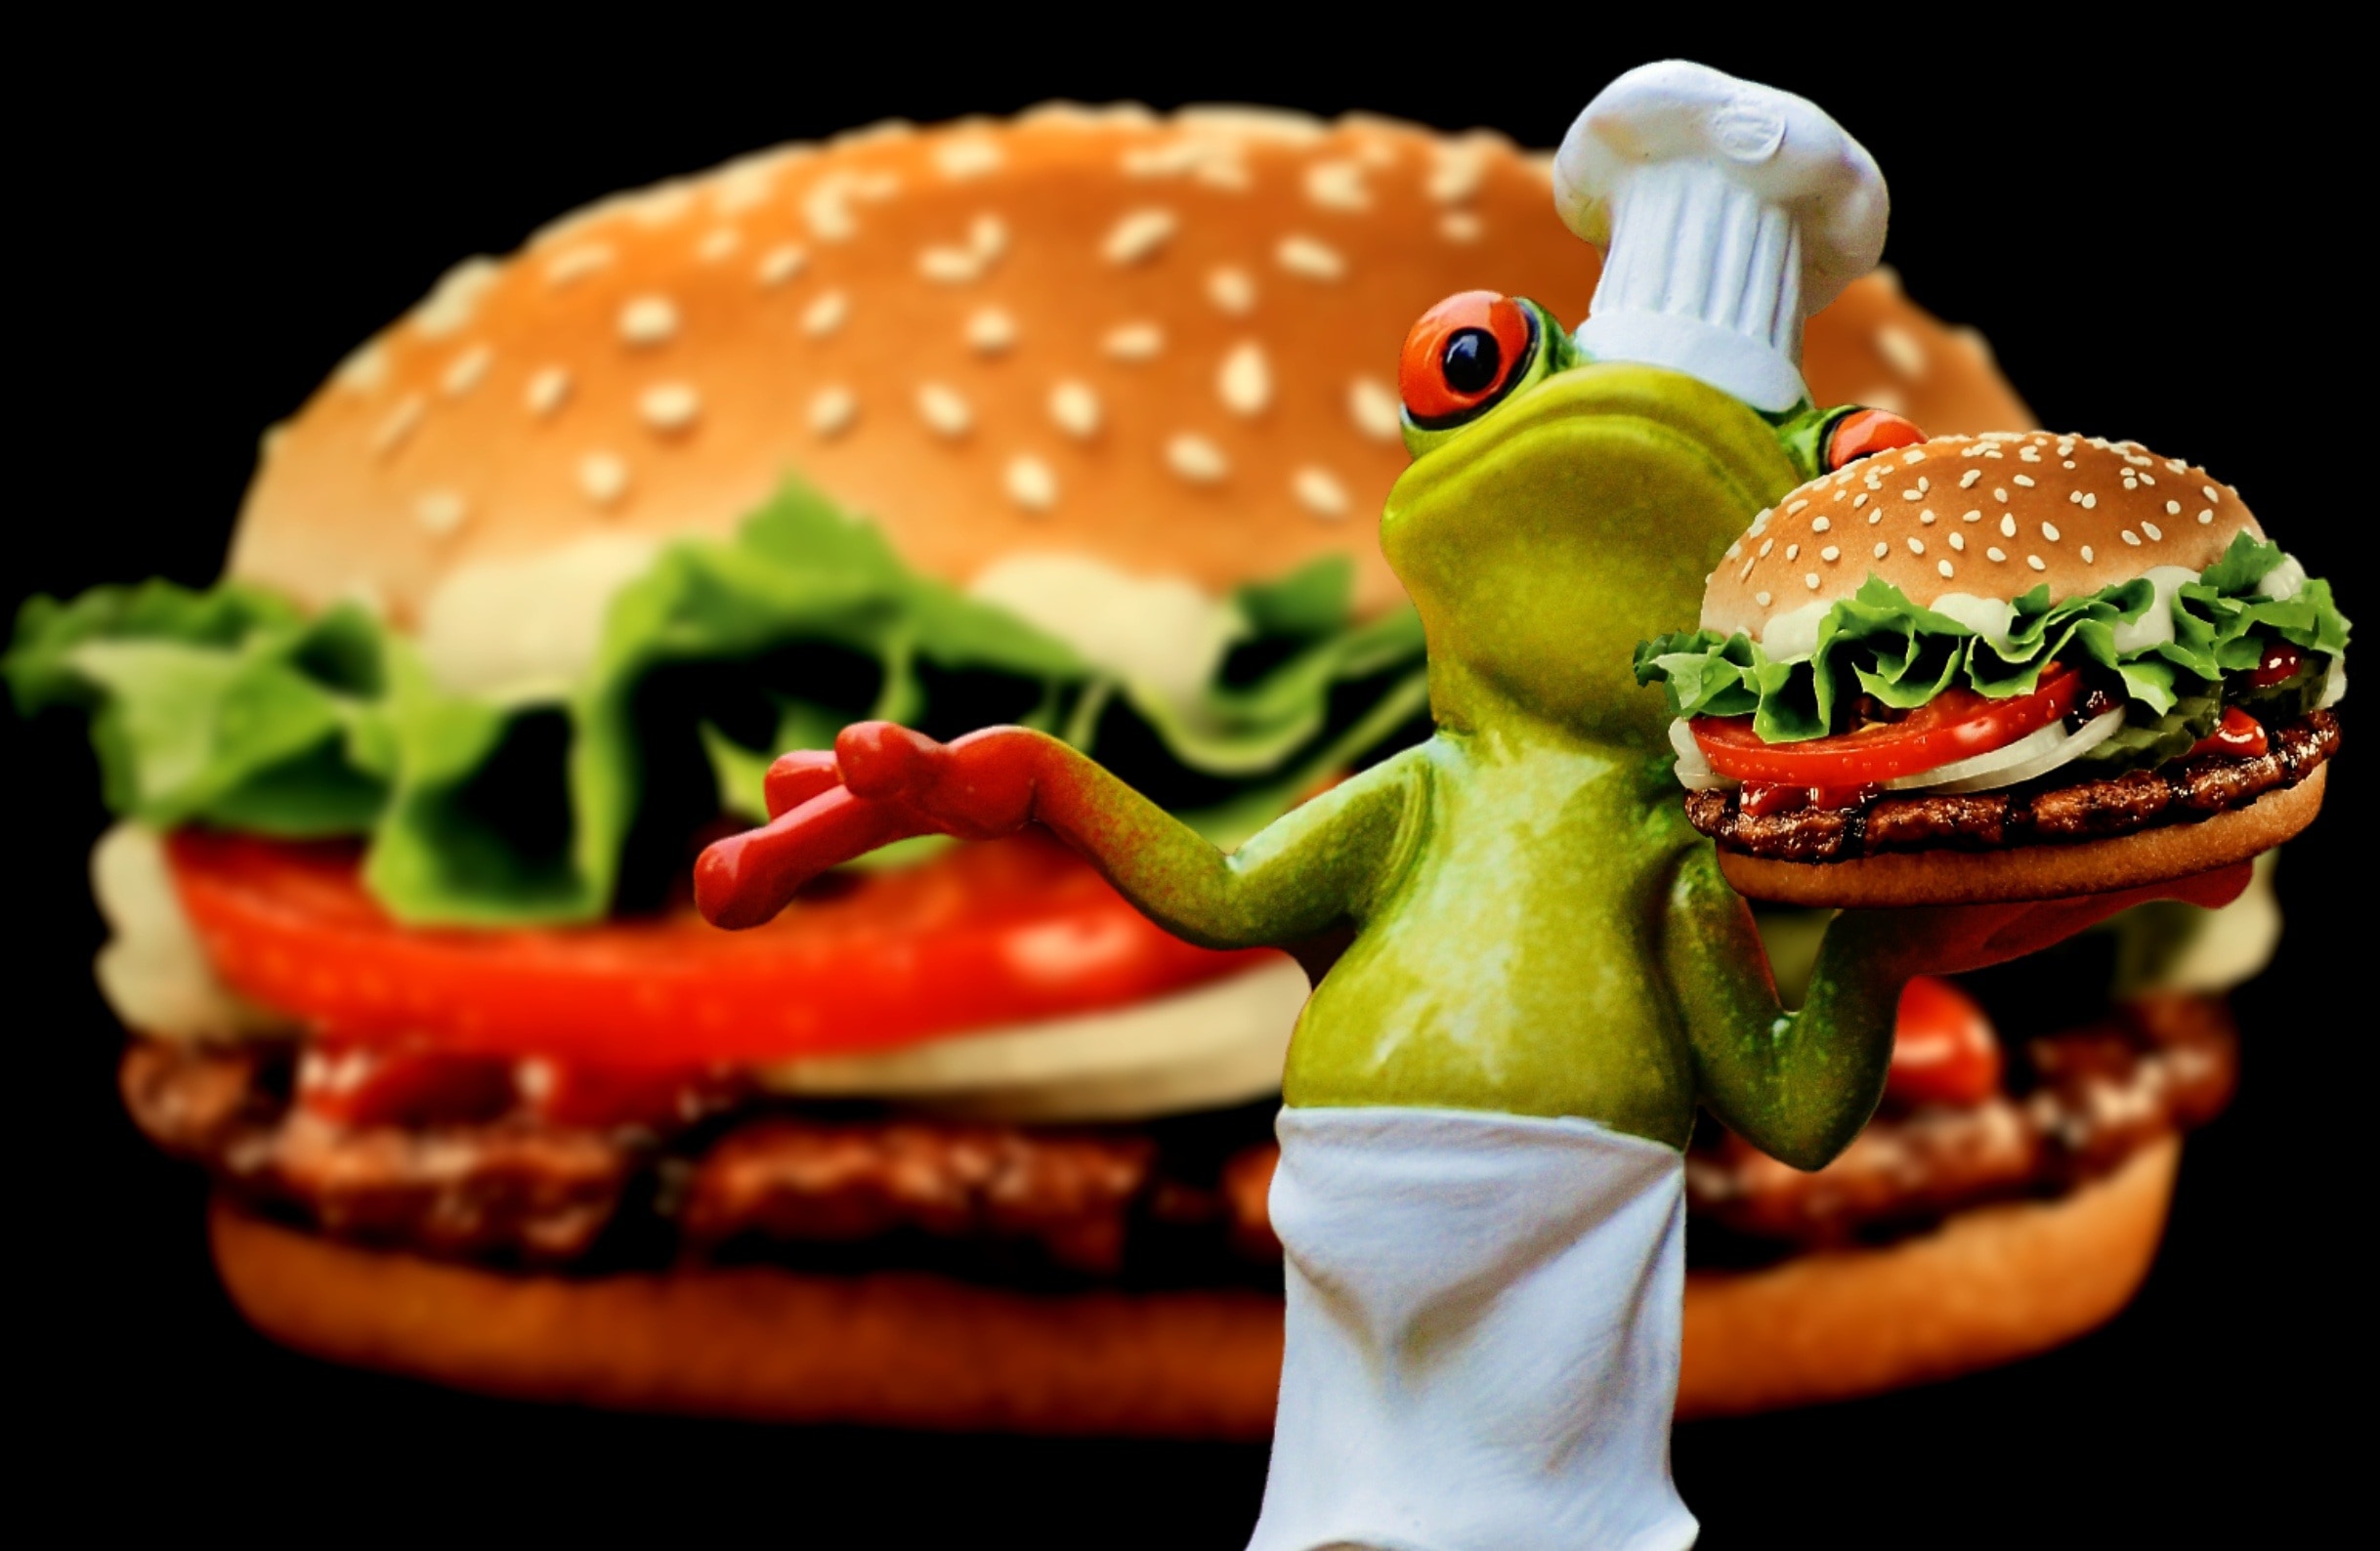 Frog, Cooking, Cheeseburger, Hamburger, tomato, food and drink